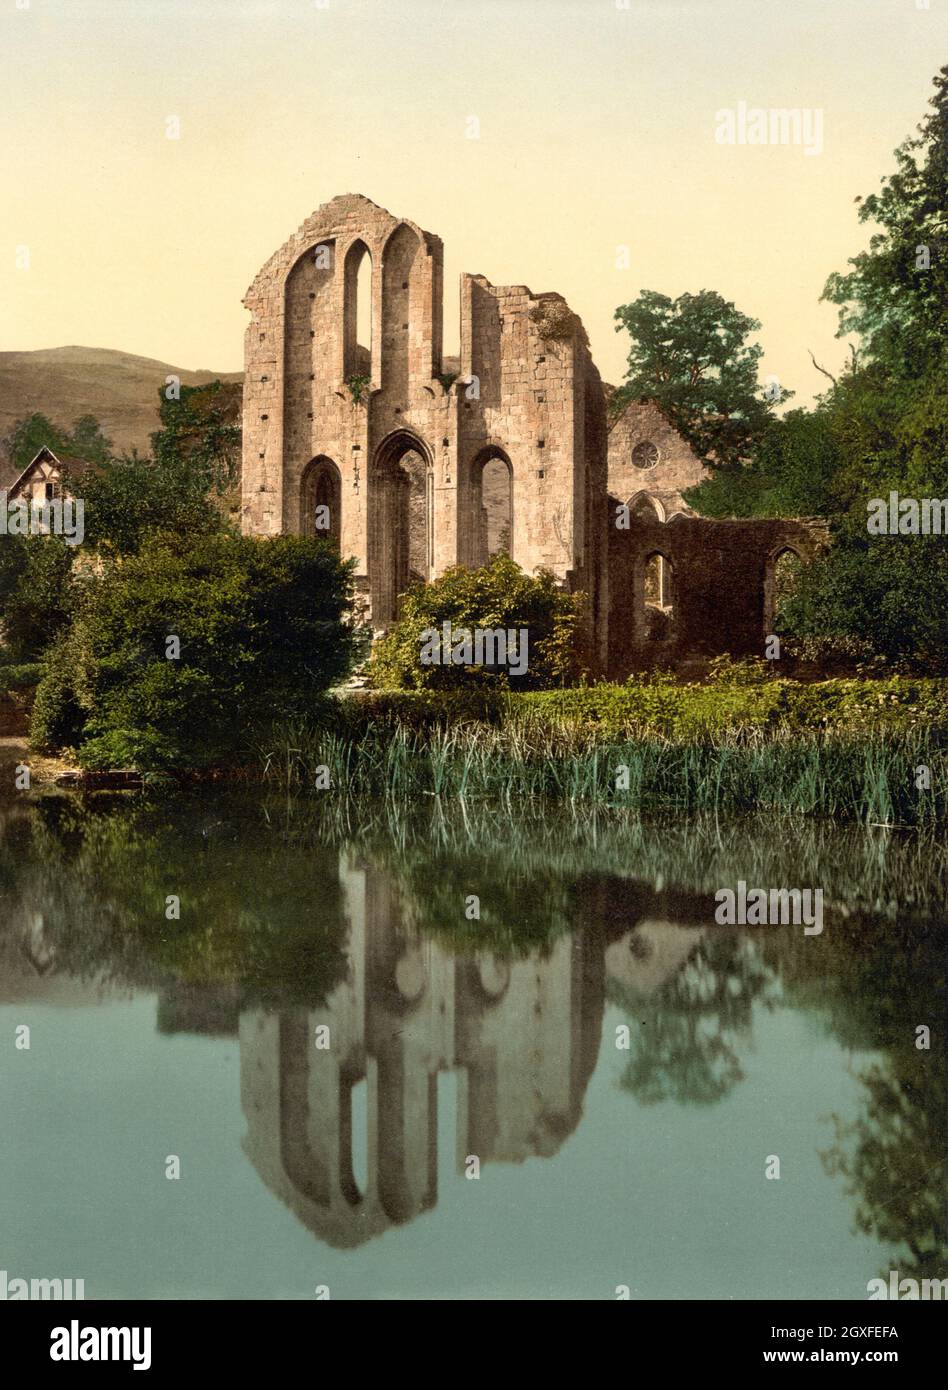 Photo couleur photochrome vintage vers 1890 de l'abbaye de Valle Crucis fondée en tant que monastère cistercien en 1201 et fermée en 1537 lors de la dissolution des monastères. C'est un point de repère important dans la vallée de Llangollen au nord du pays de Galles Banque D'Images